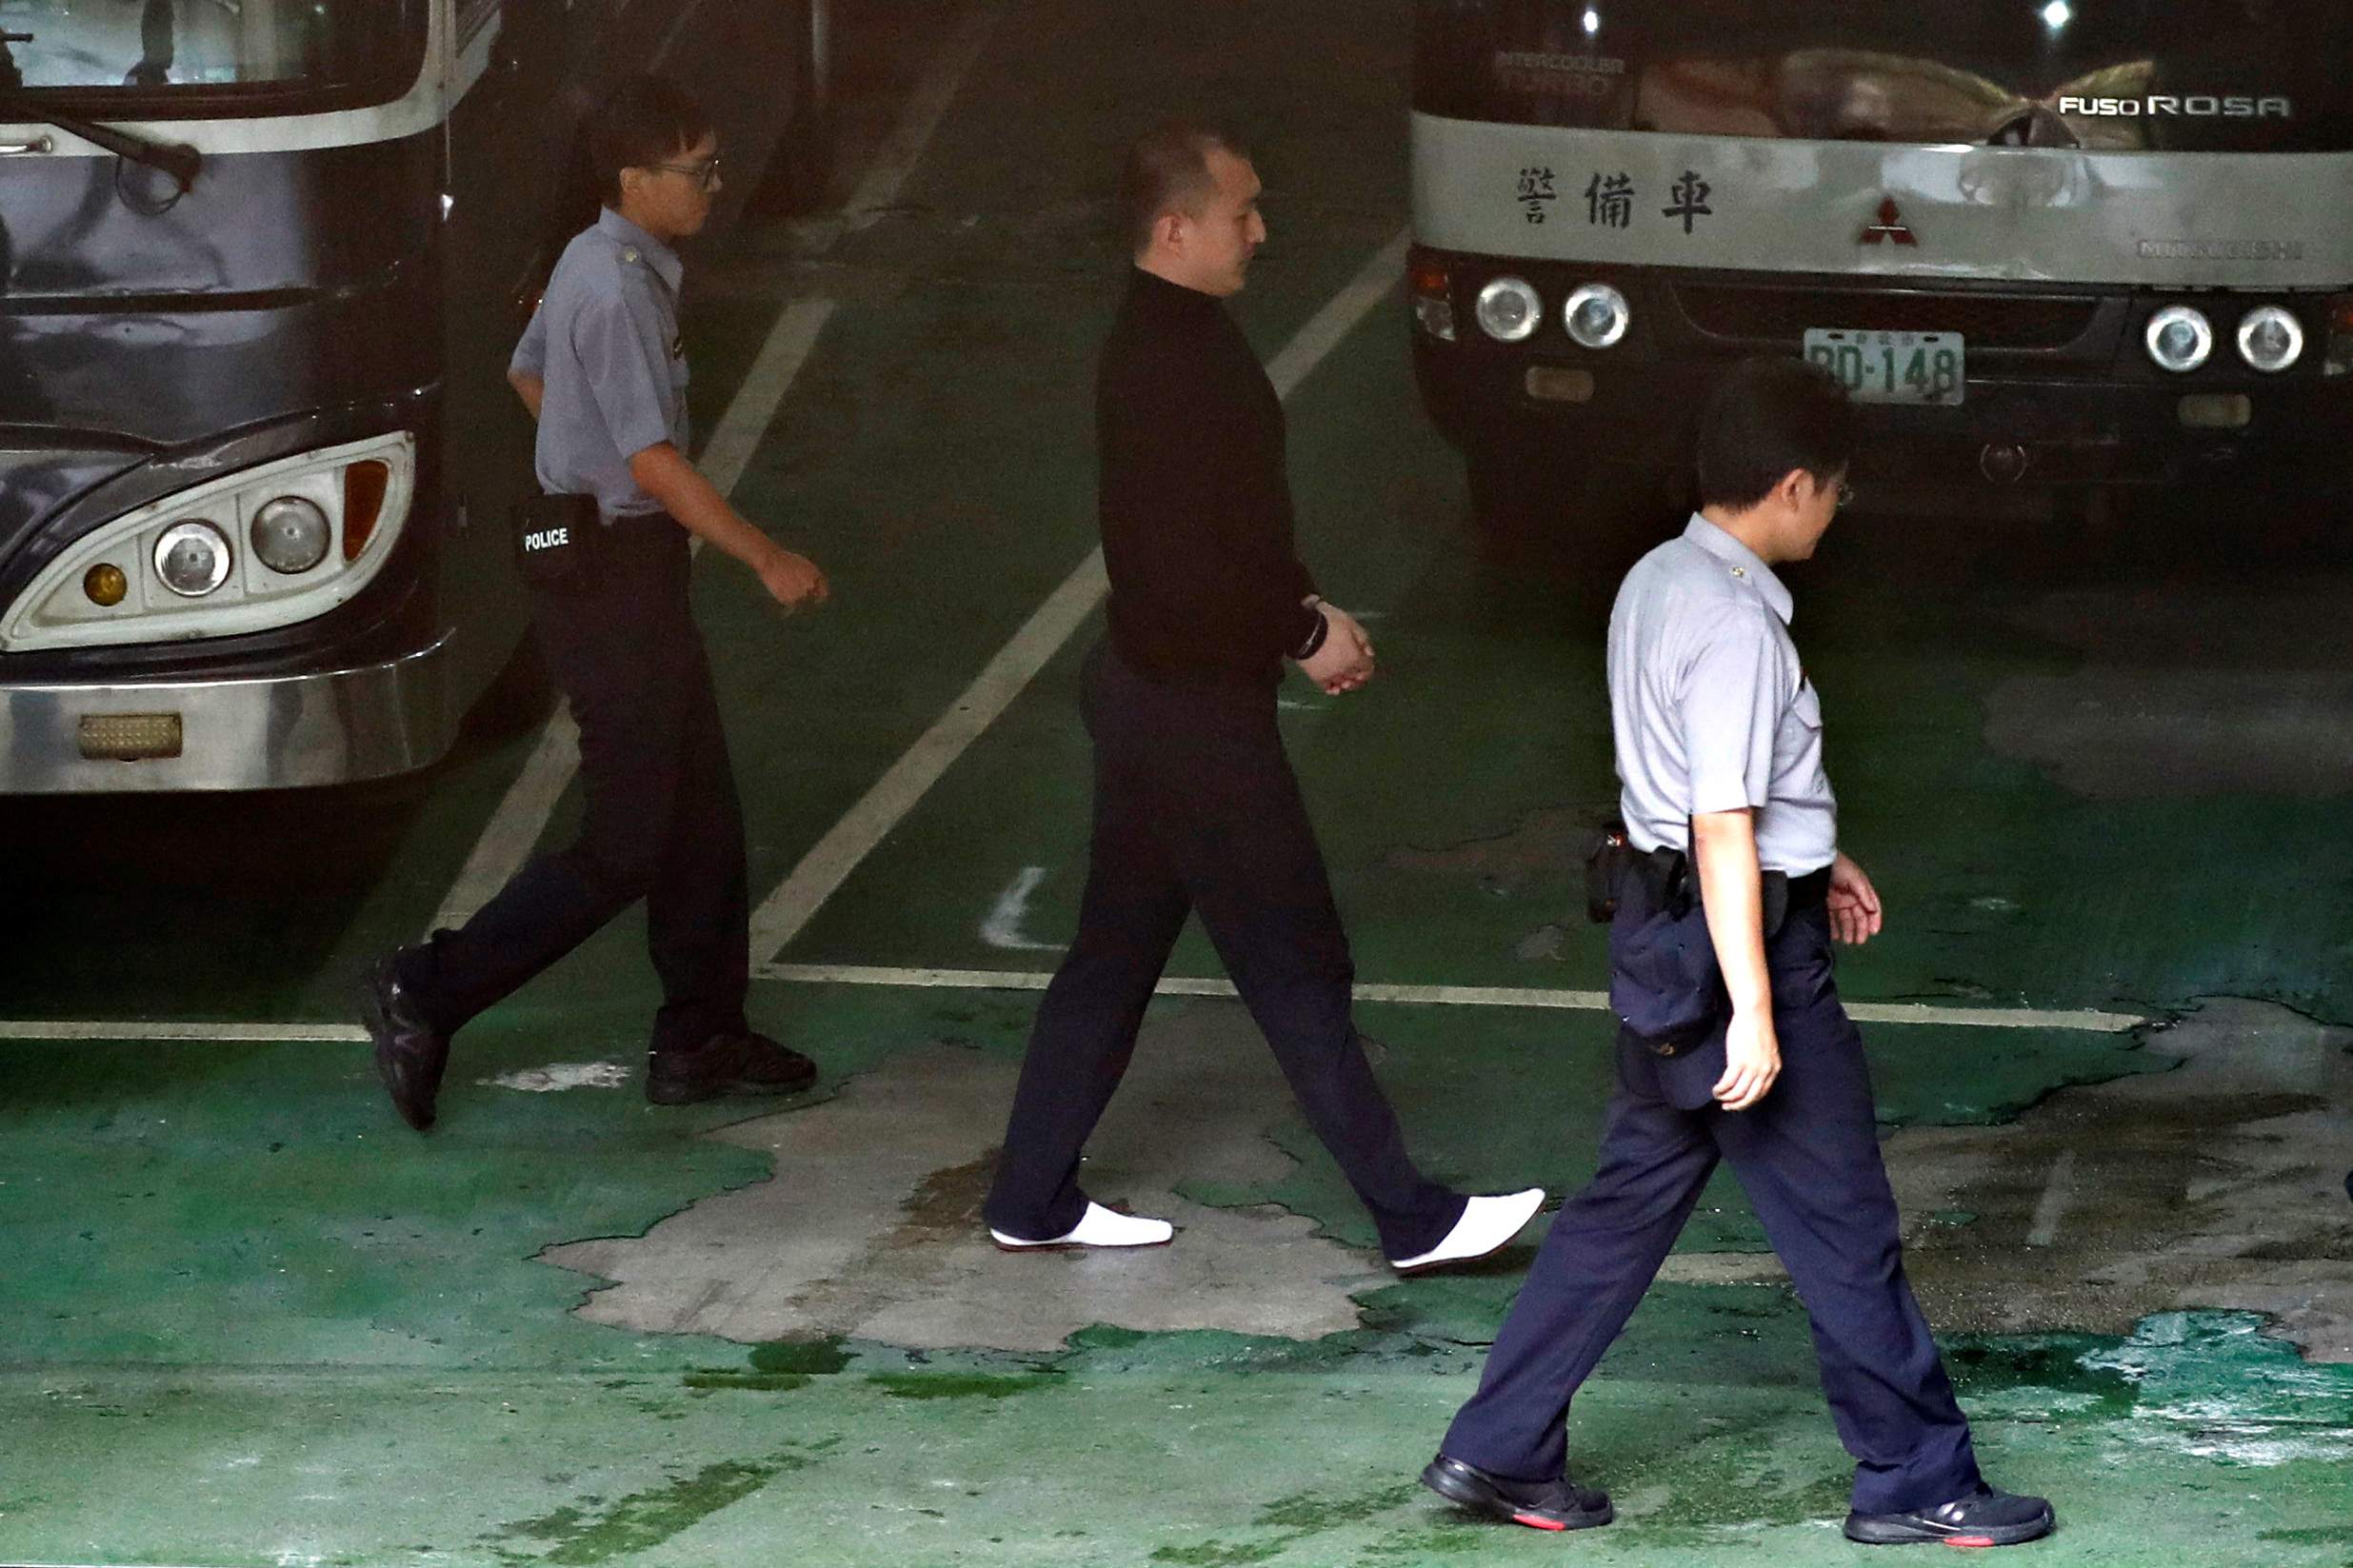 الشرطة تصطحب الطالب الصينى فى تايوان للمحاكمة